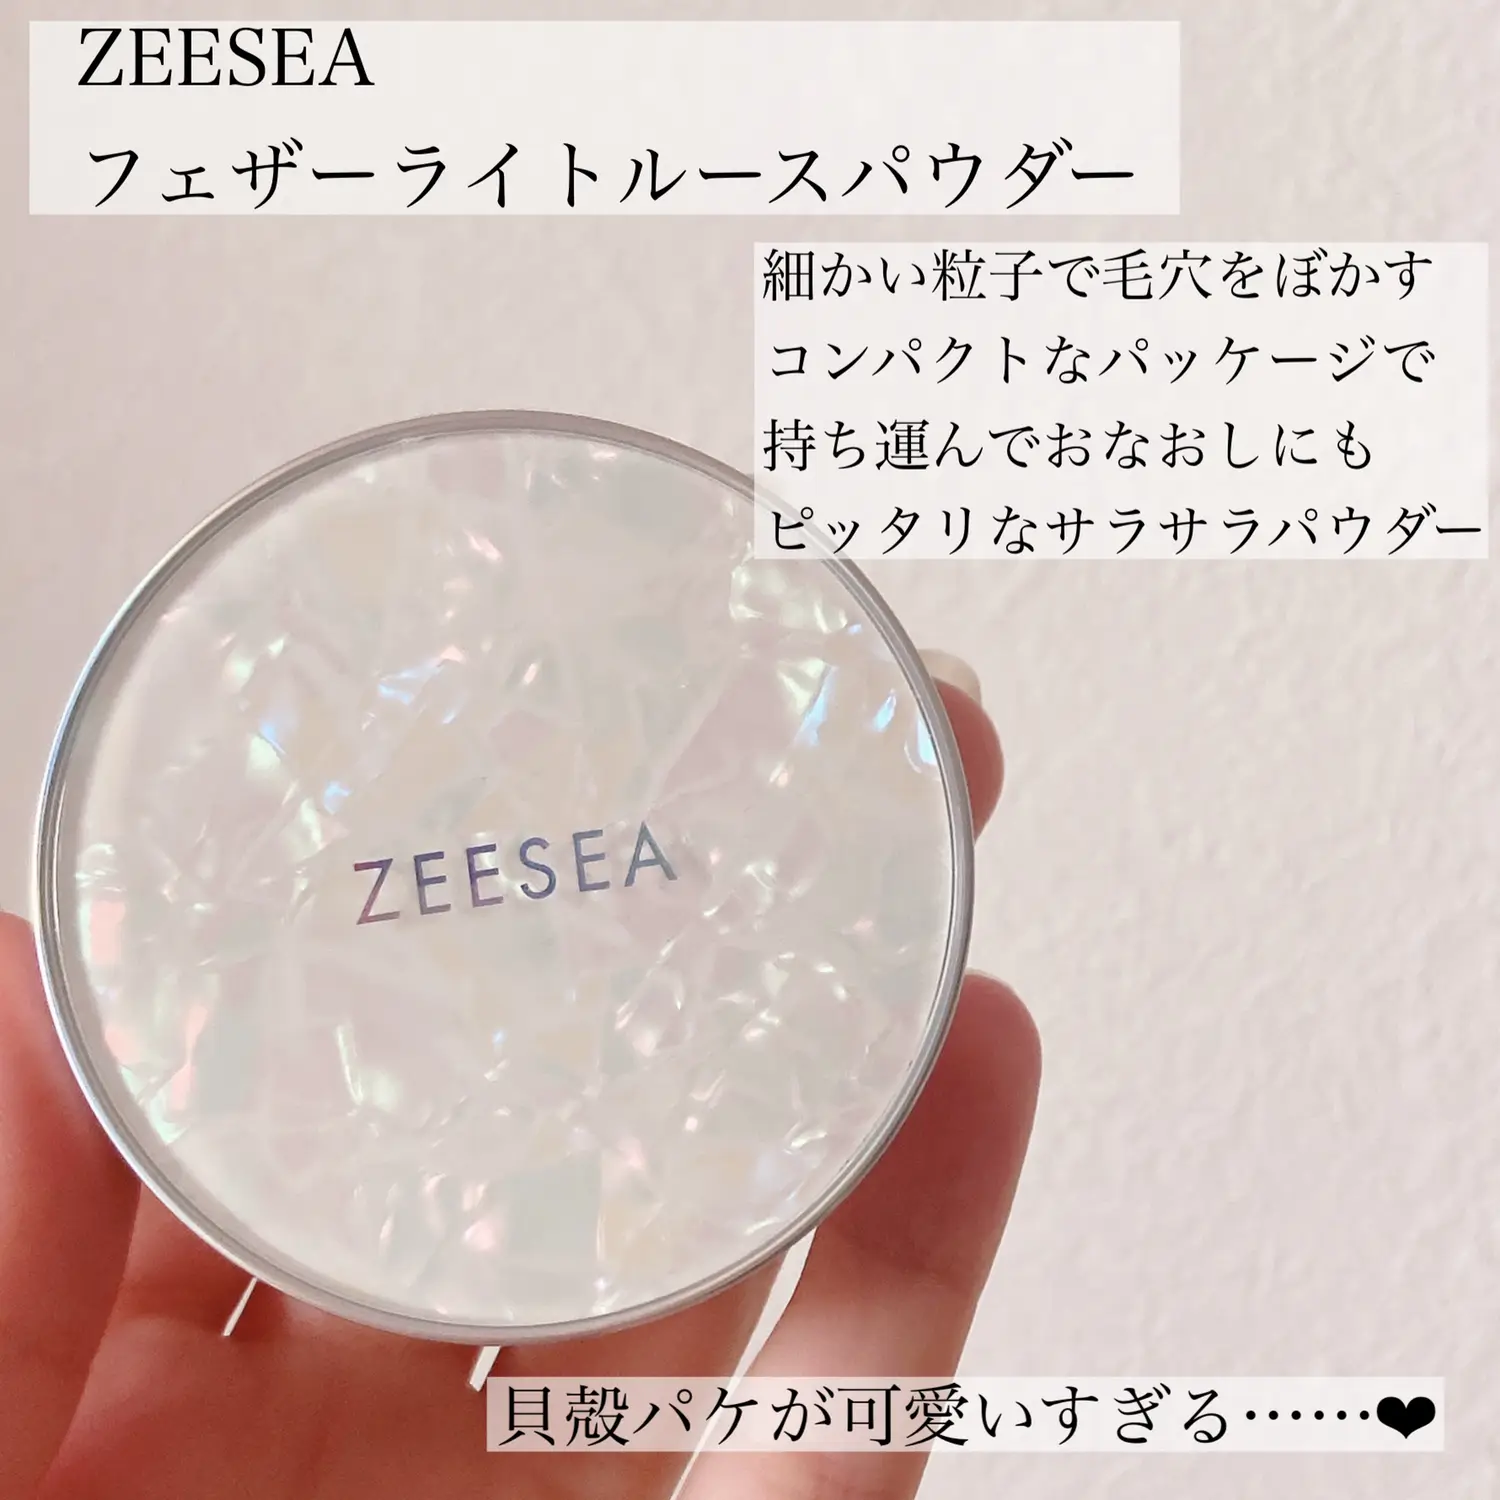 ZEESEA「0」粉感ルースパウダー(5g) J00